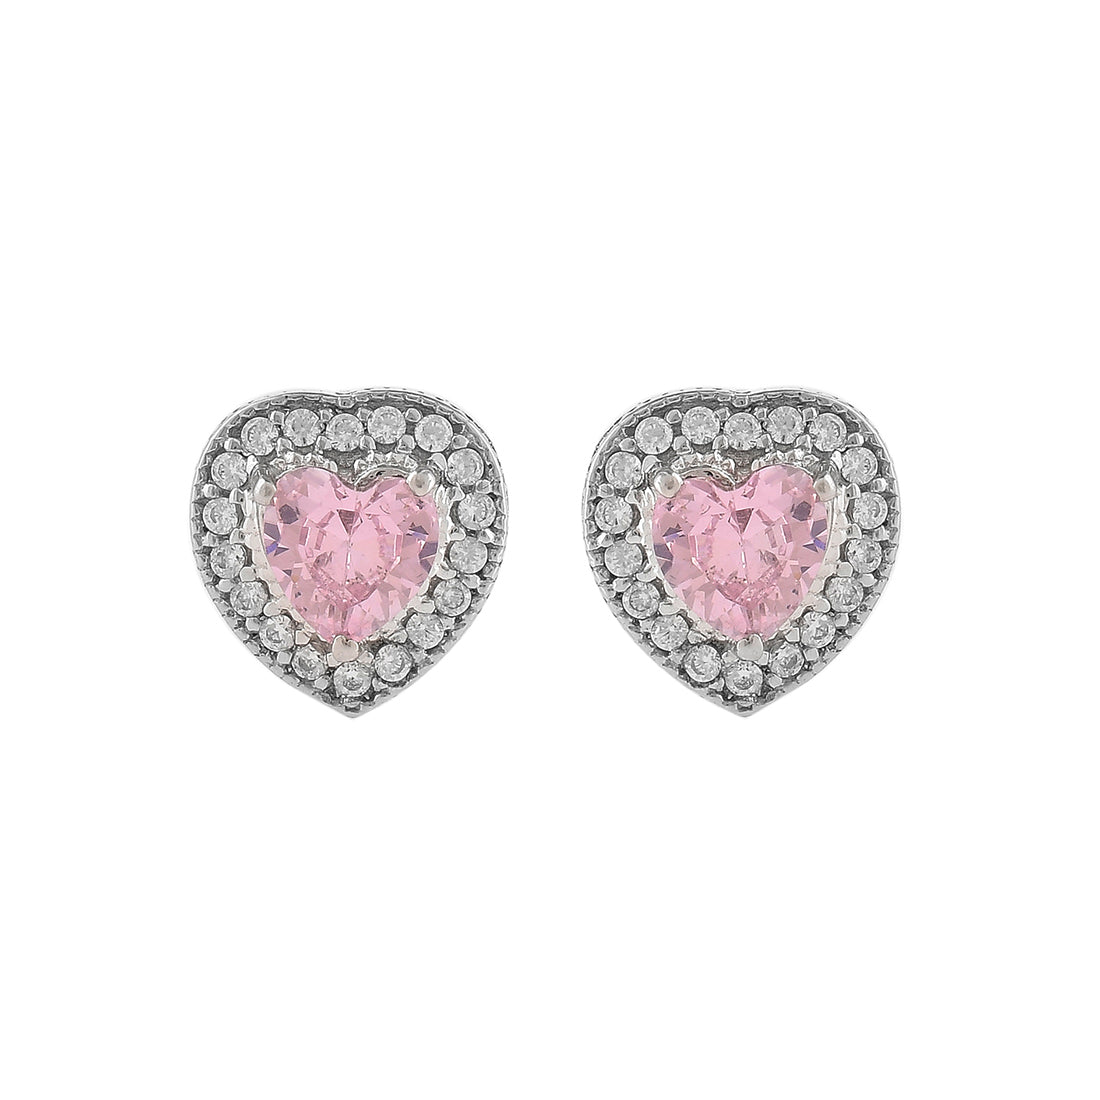 Women's Heart Pink Cz Stud Earrings - Voylla